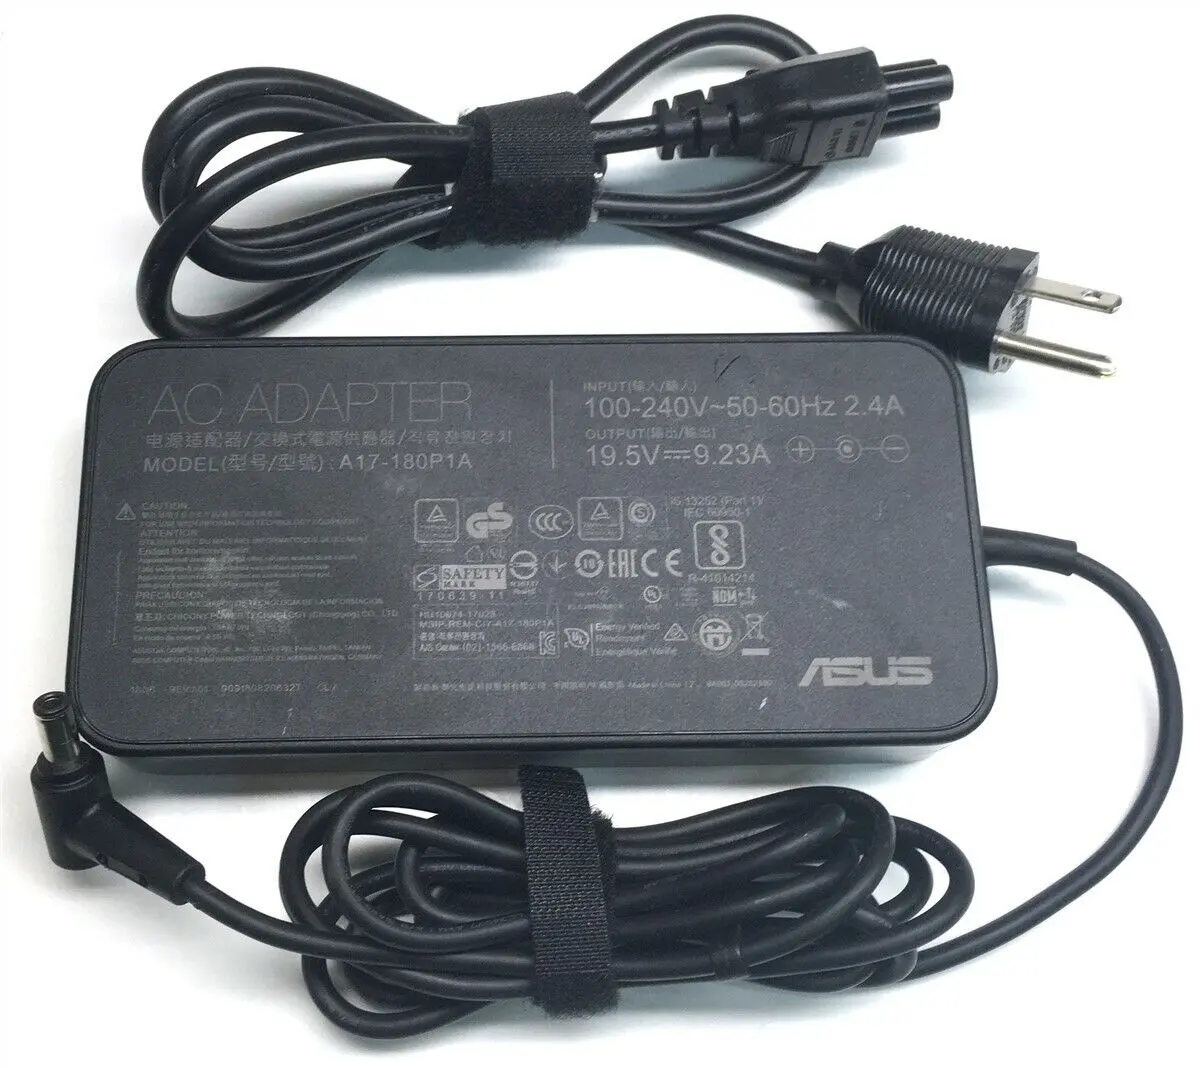 A17-180P1A pour Asus chargeur d'ordinateur portable adaptateur d'alimentation A17-180P1A 19.5V 9.23A 180W